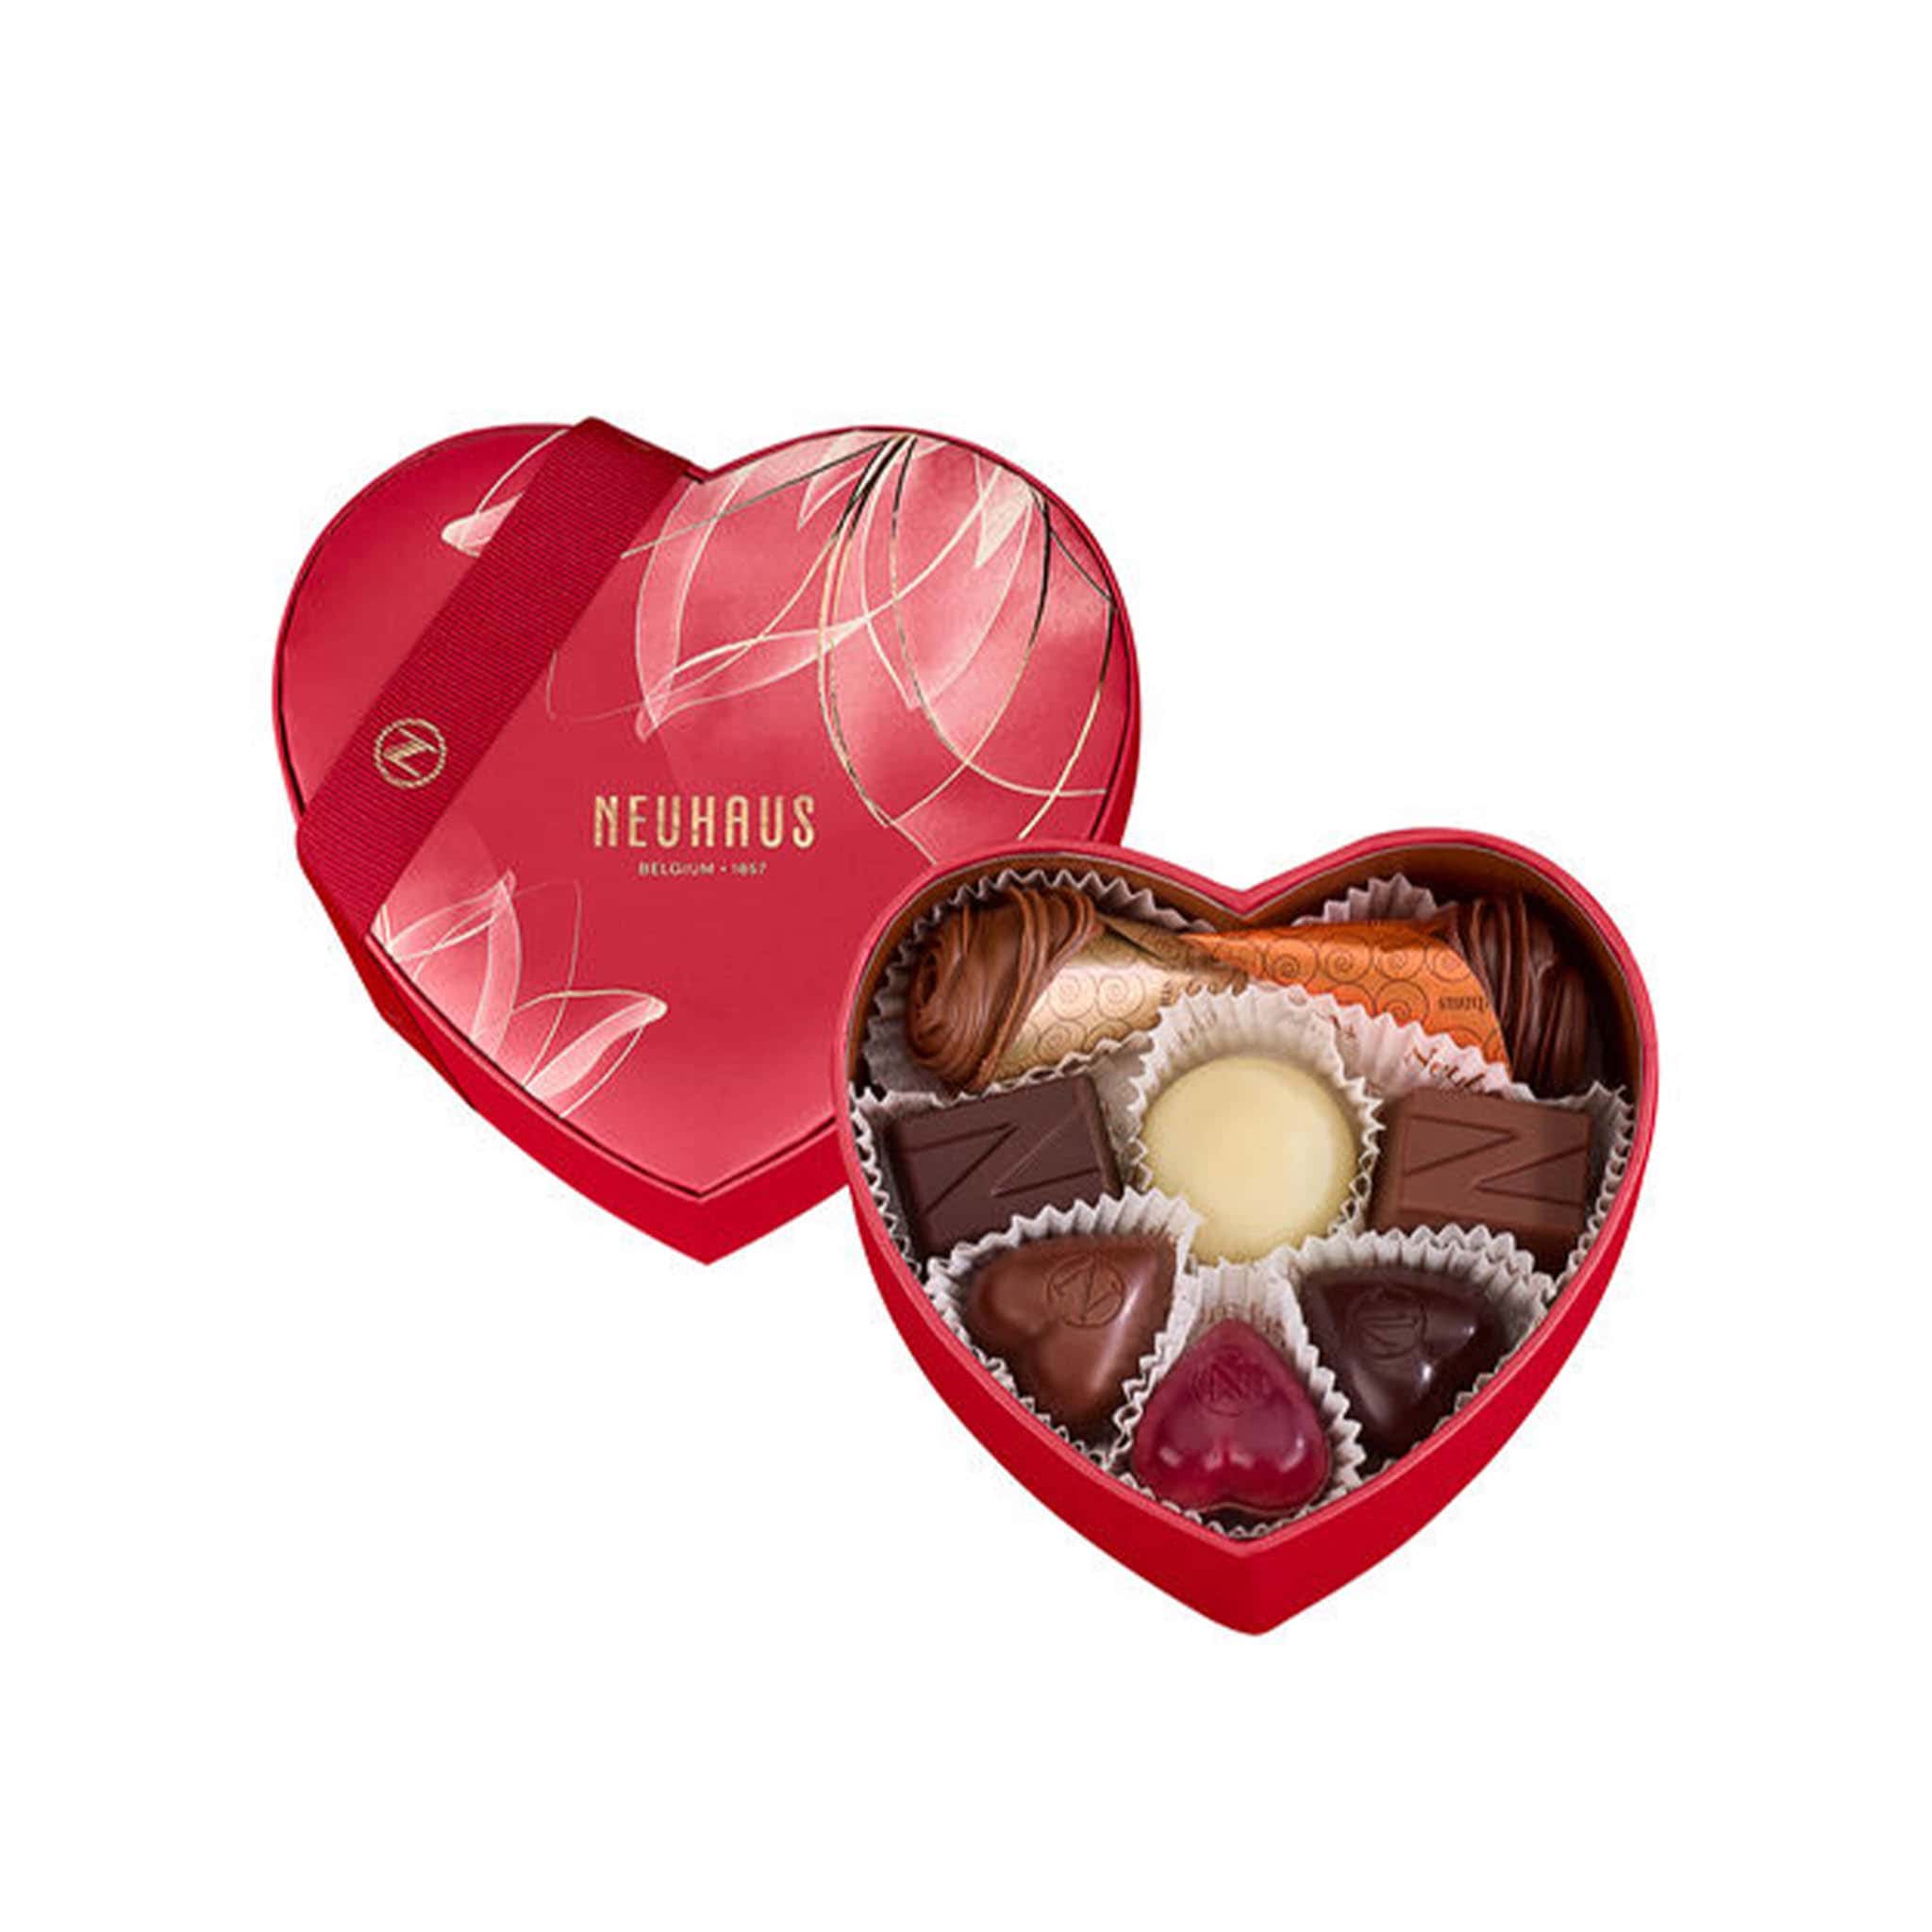 Neuhaus Small Red Heart Box of Chocolates, 185g